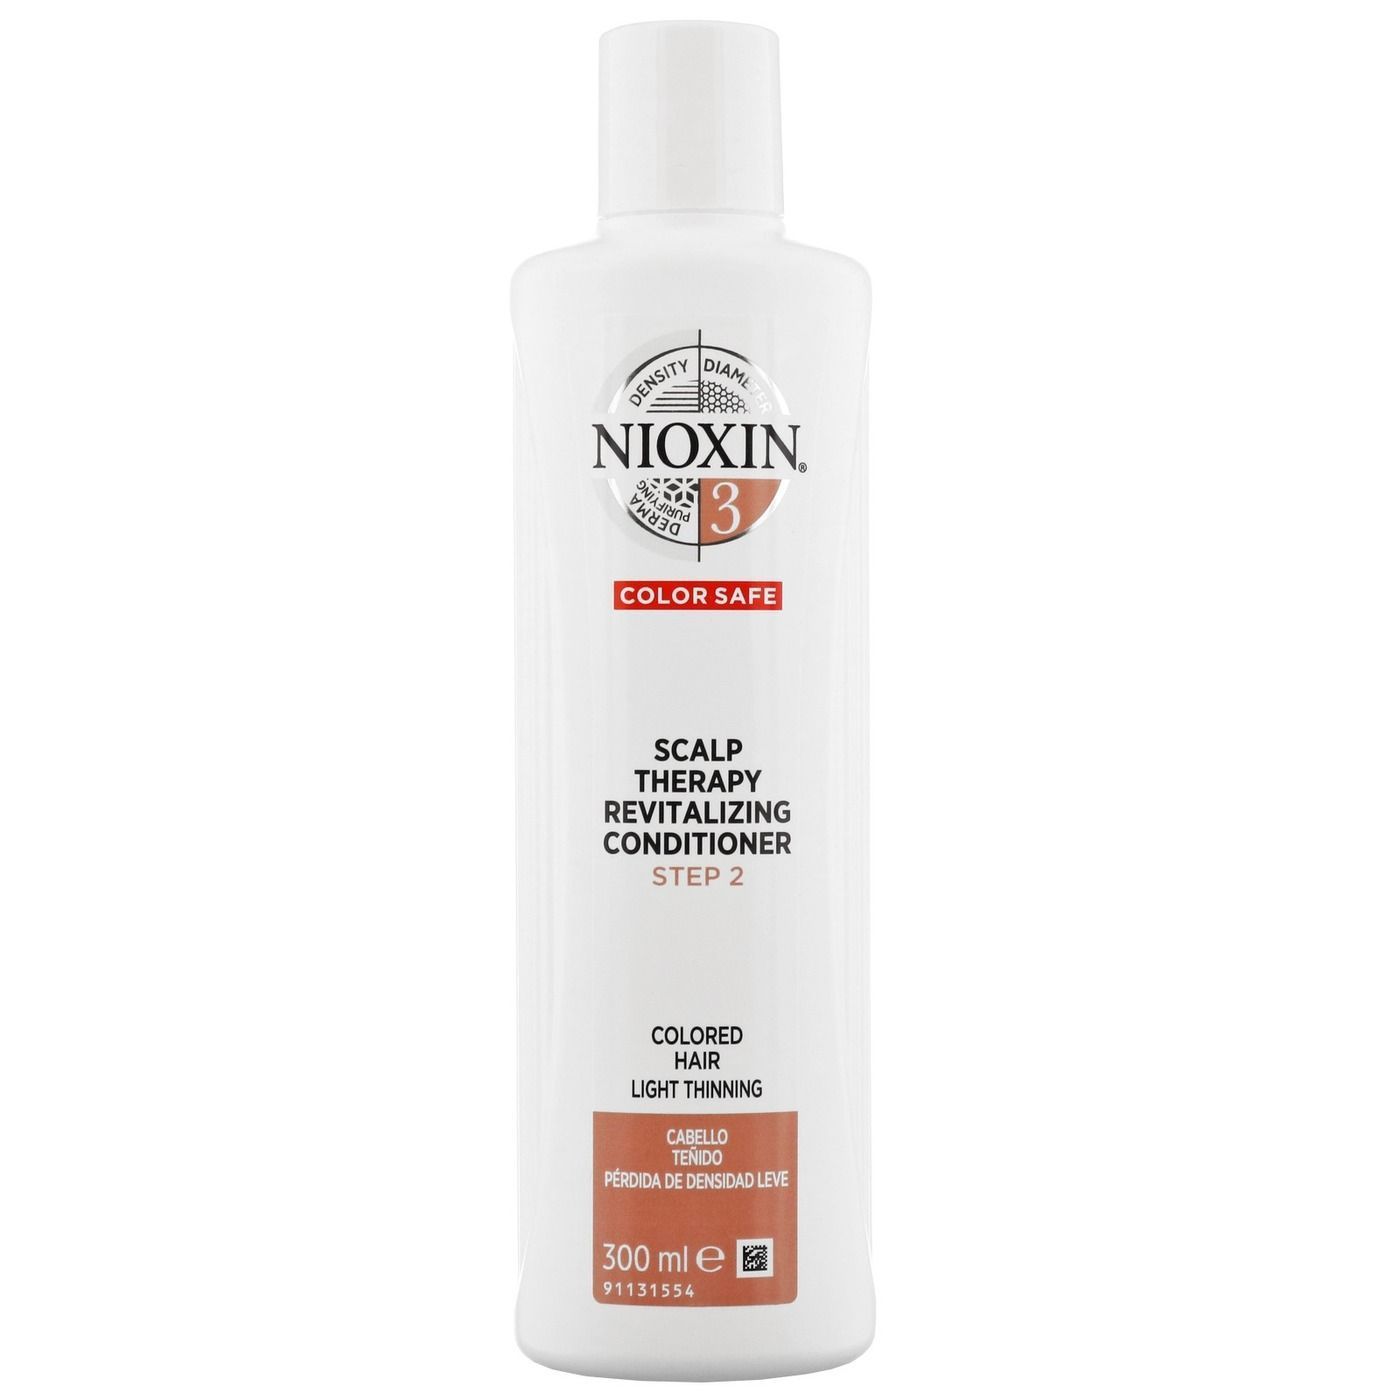 Увлажняющие кондиционеры для волос отзывы. Nioxin увлажняющий кондиционер система 3 1000 мл. Nioxin увлажняющий кондиционер (система 4) 300 мл. Nioxin System 05 Scalp Revitalizer Conditioner увлажняющий кондиционер (система 5), 1000мл. Nioxin thickening Spray и Thermal Activ Protector.